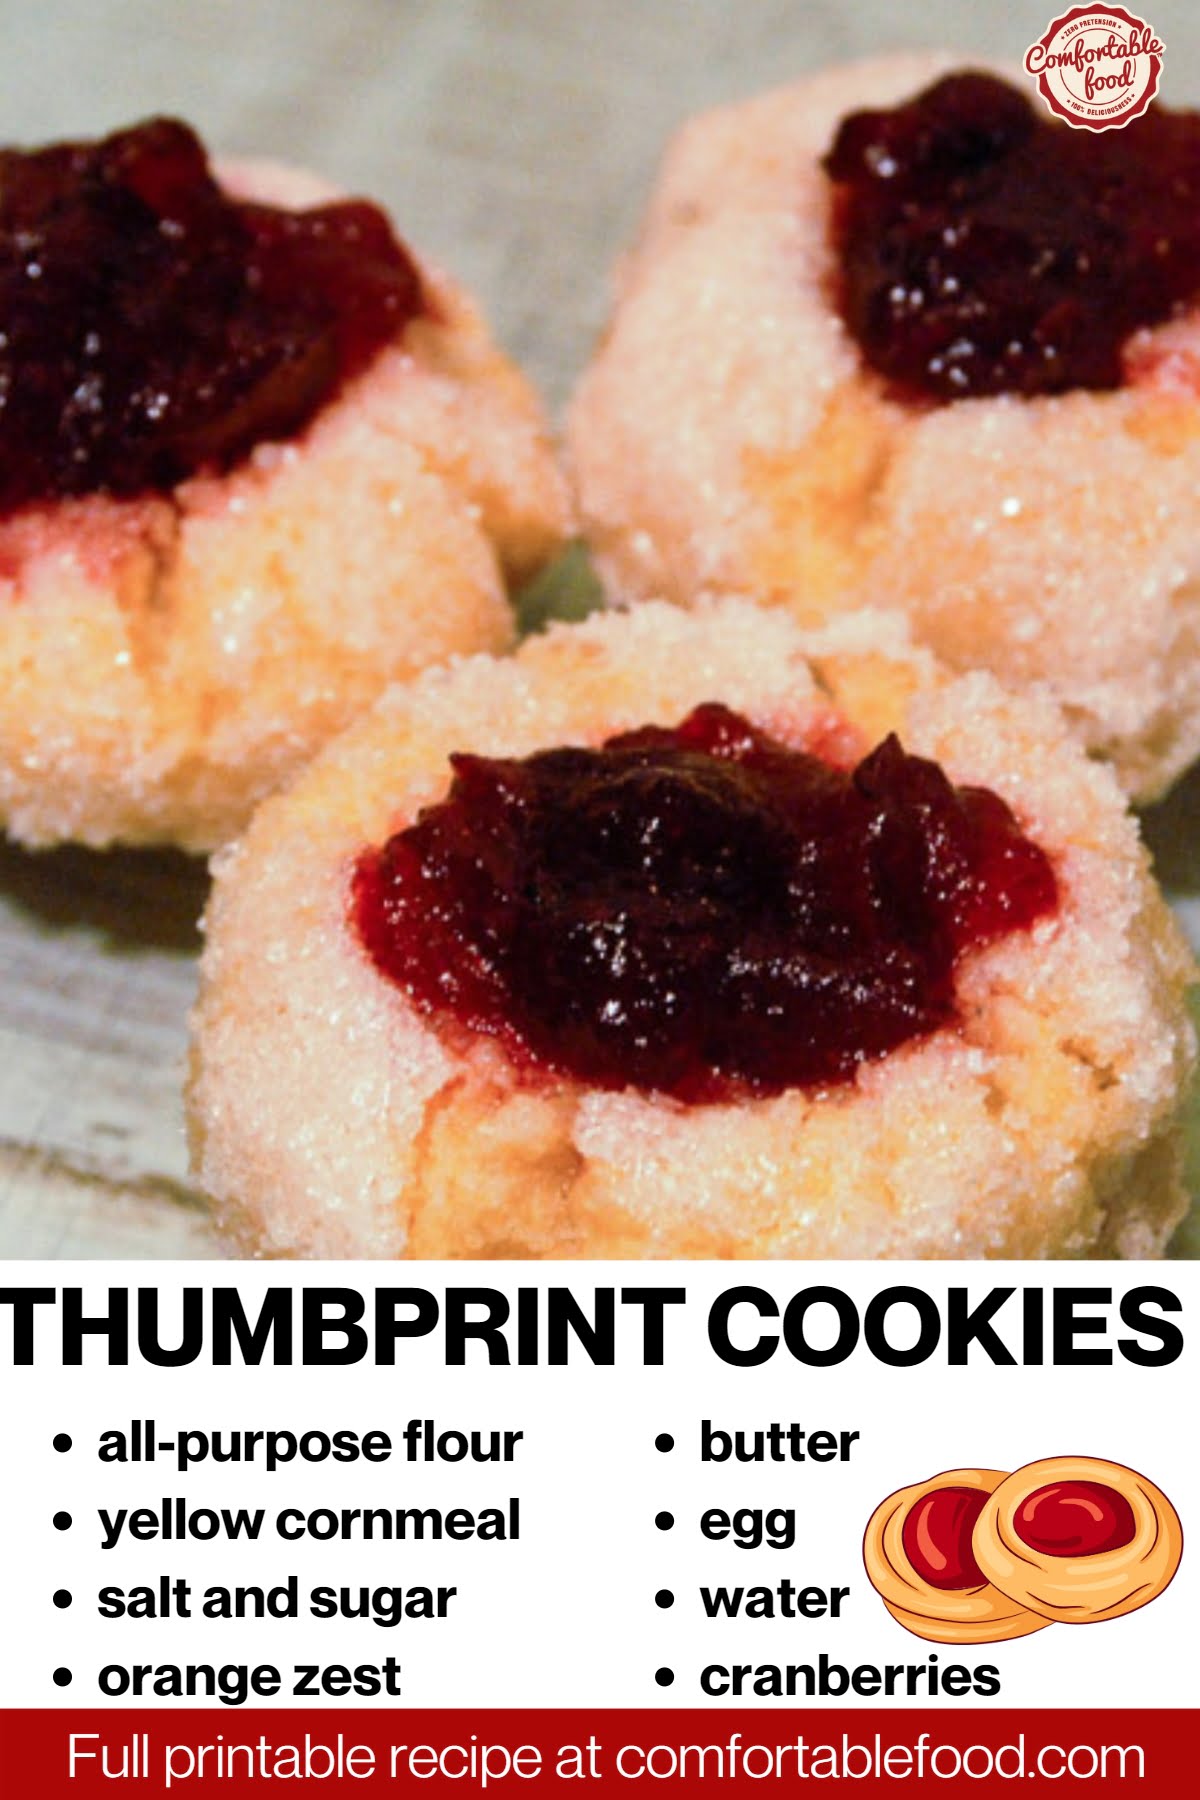 Thumbprint cookies - socials